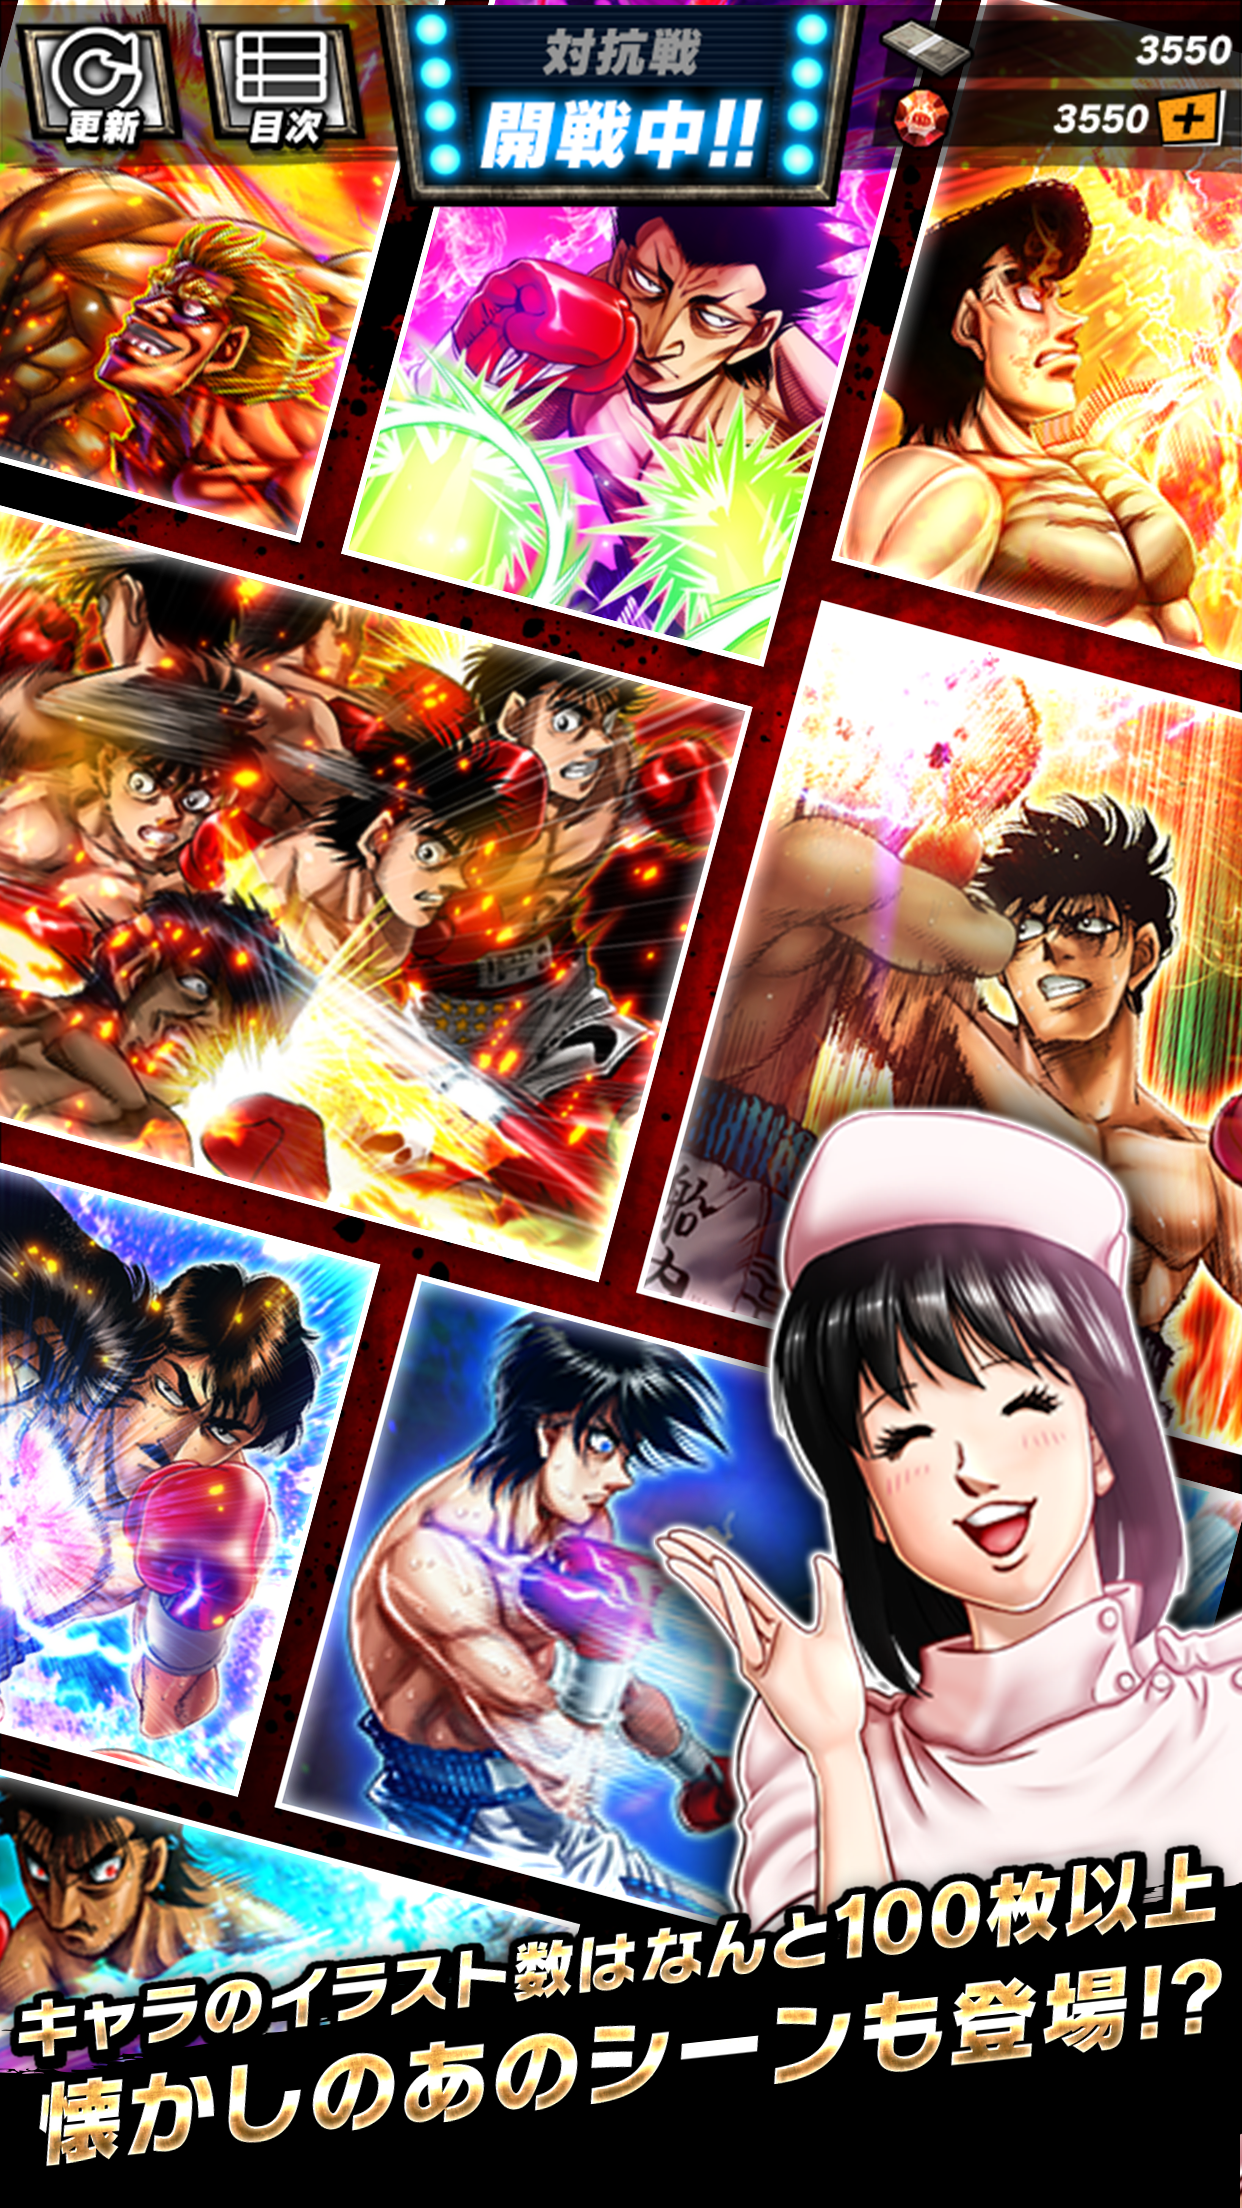 Qoo News] “Hajime no Ippo: Fighting Souls” Mobile Game Now